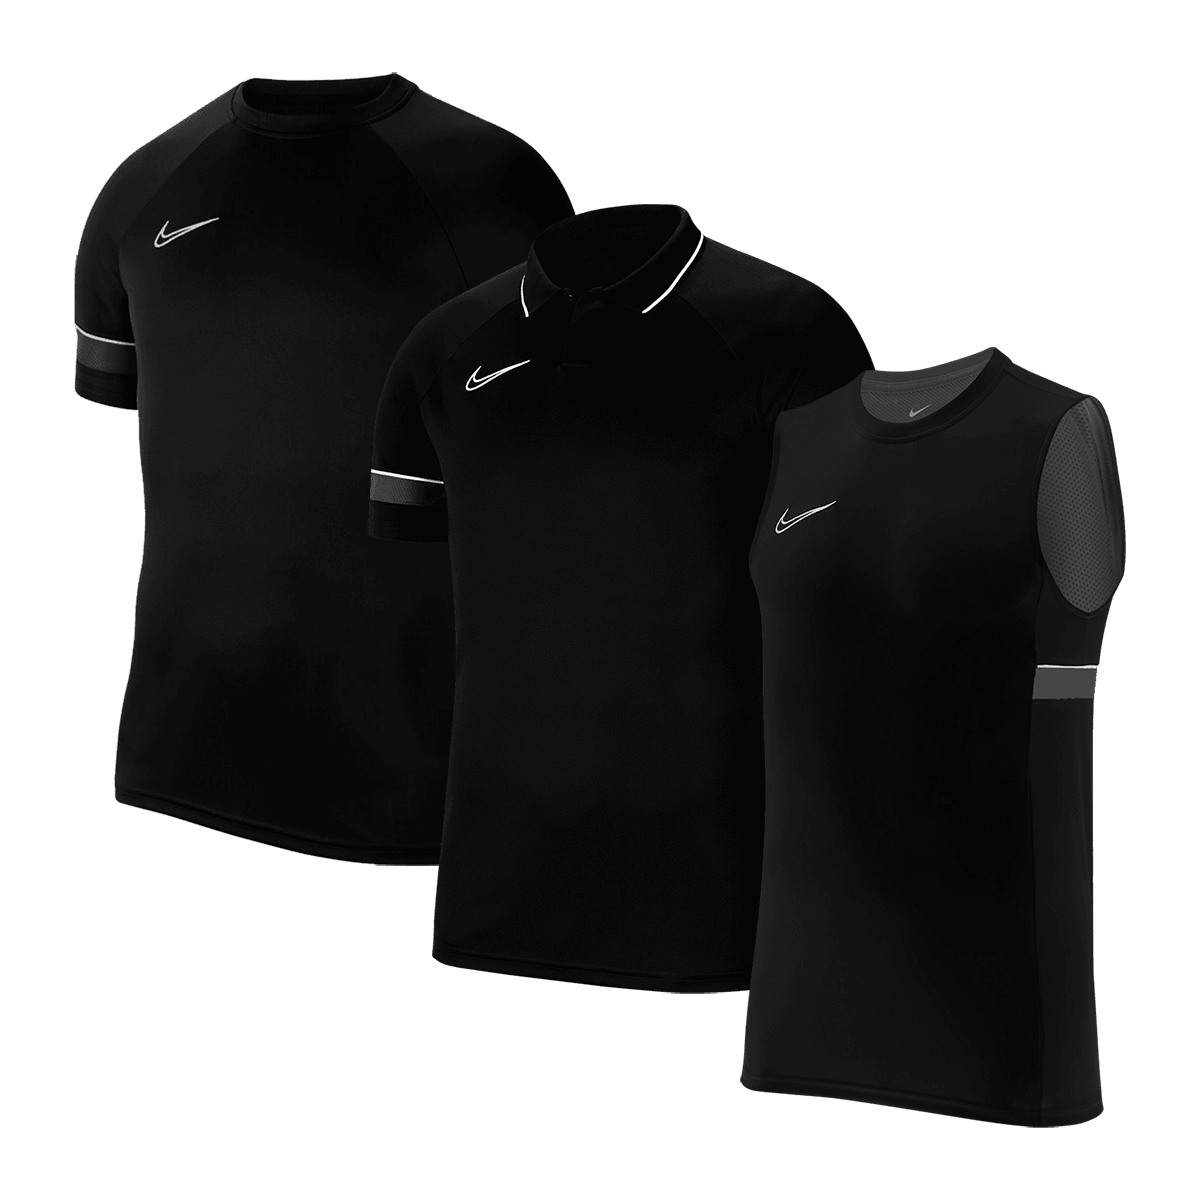 Bild zu 3-teiliges Nike Academy 21 Shirt-Set für 37,95€ (Vergleich: 48,19€)